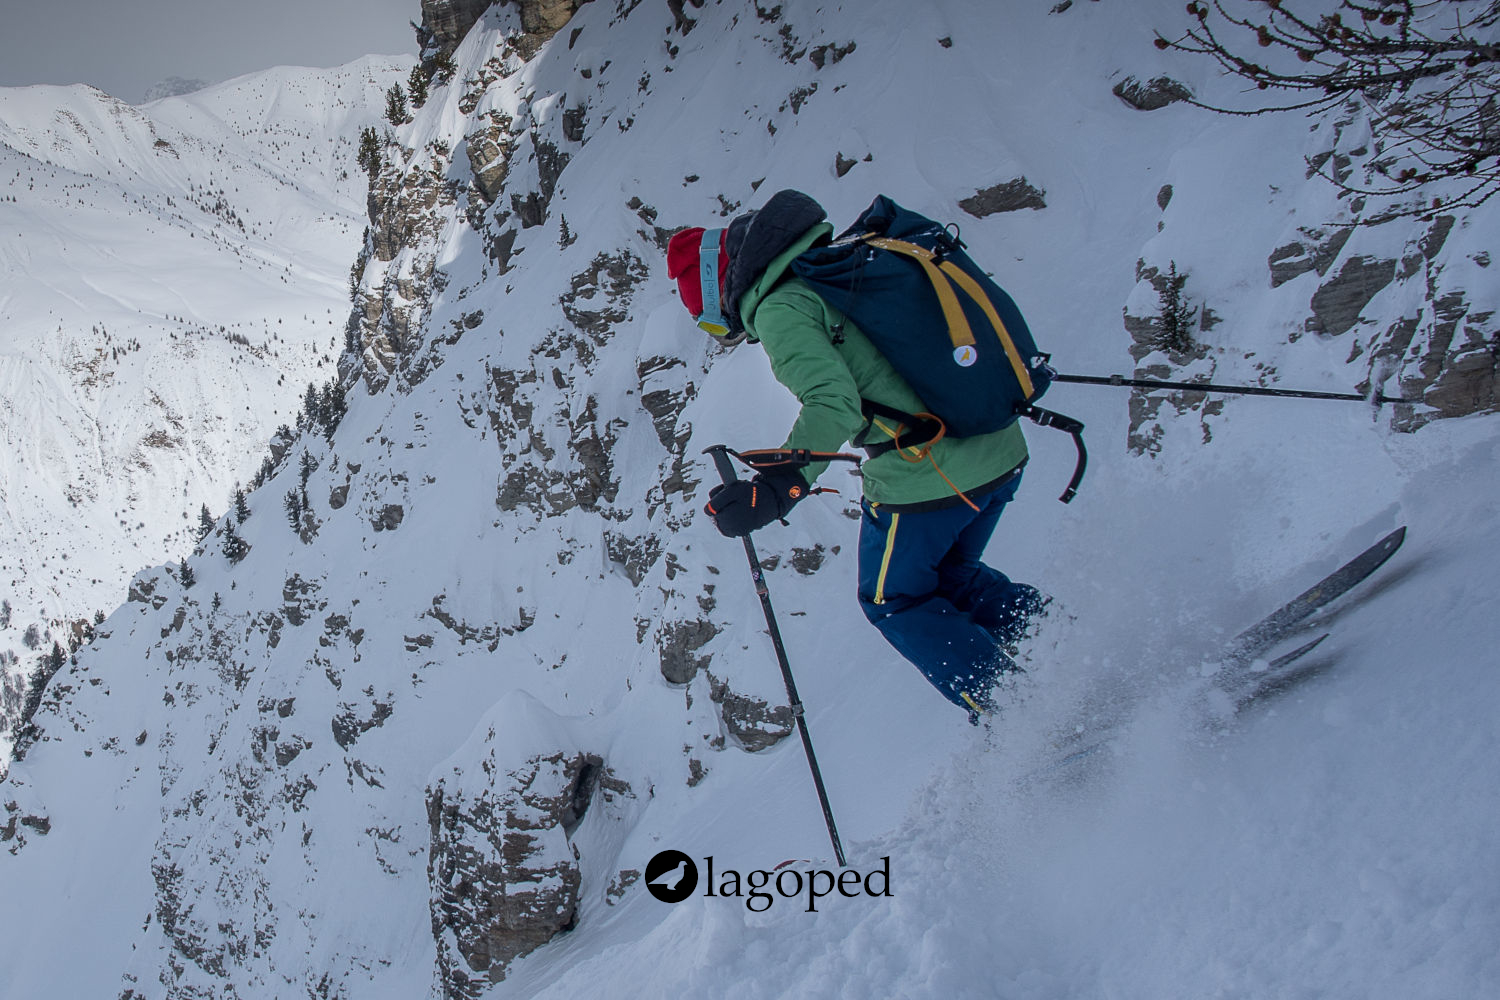 Calendrier sorties - Ecole DE ski de Montagne LAGOPED : L’essentiel (ou Progression)